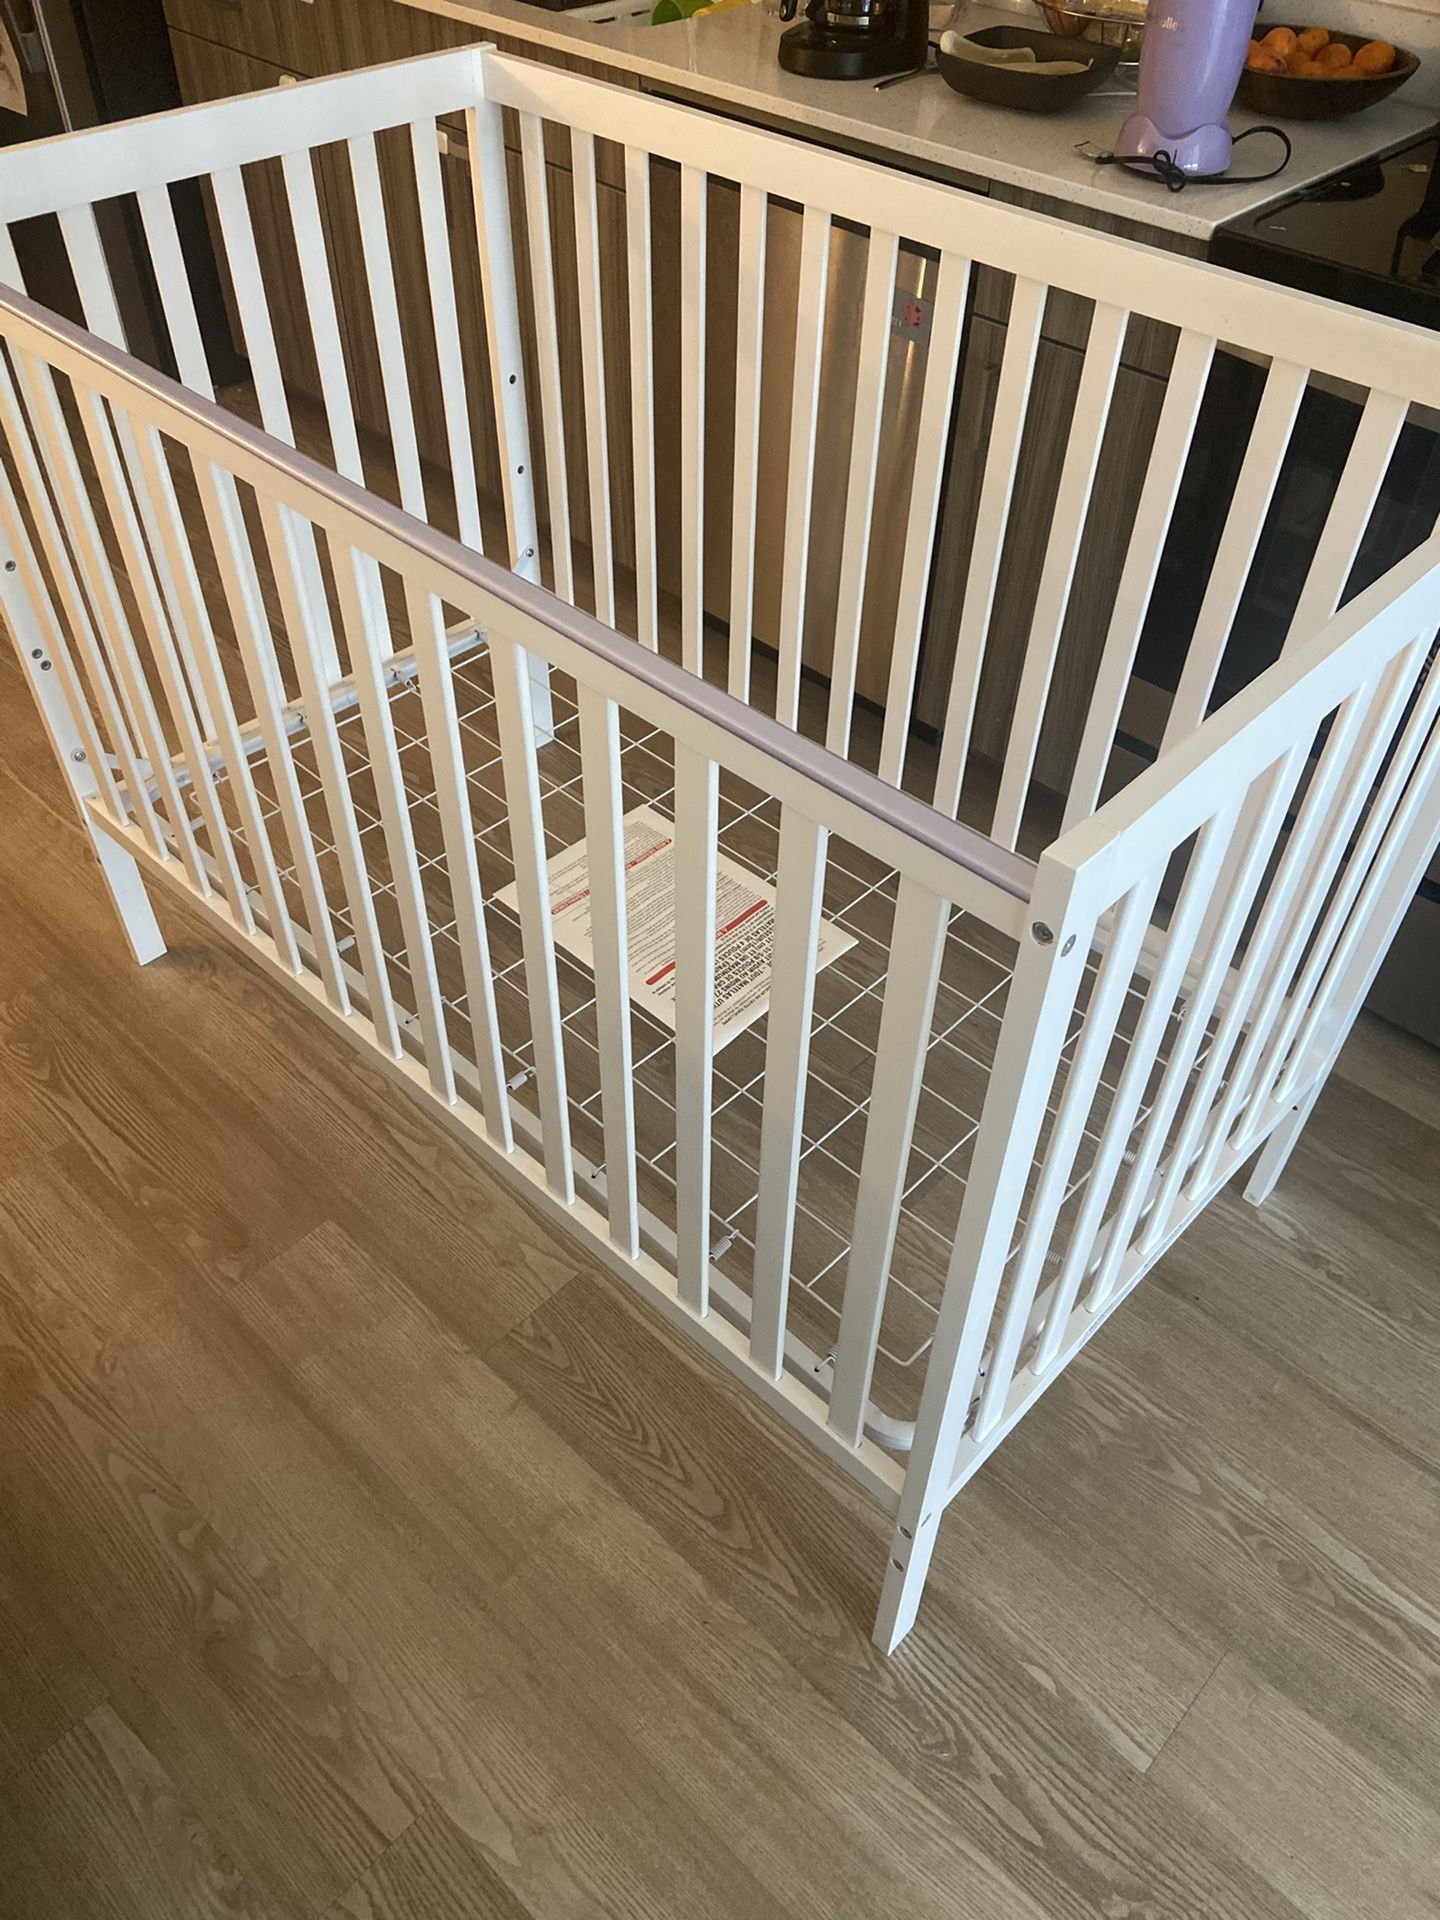 Crib In Perfect Condition